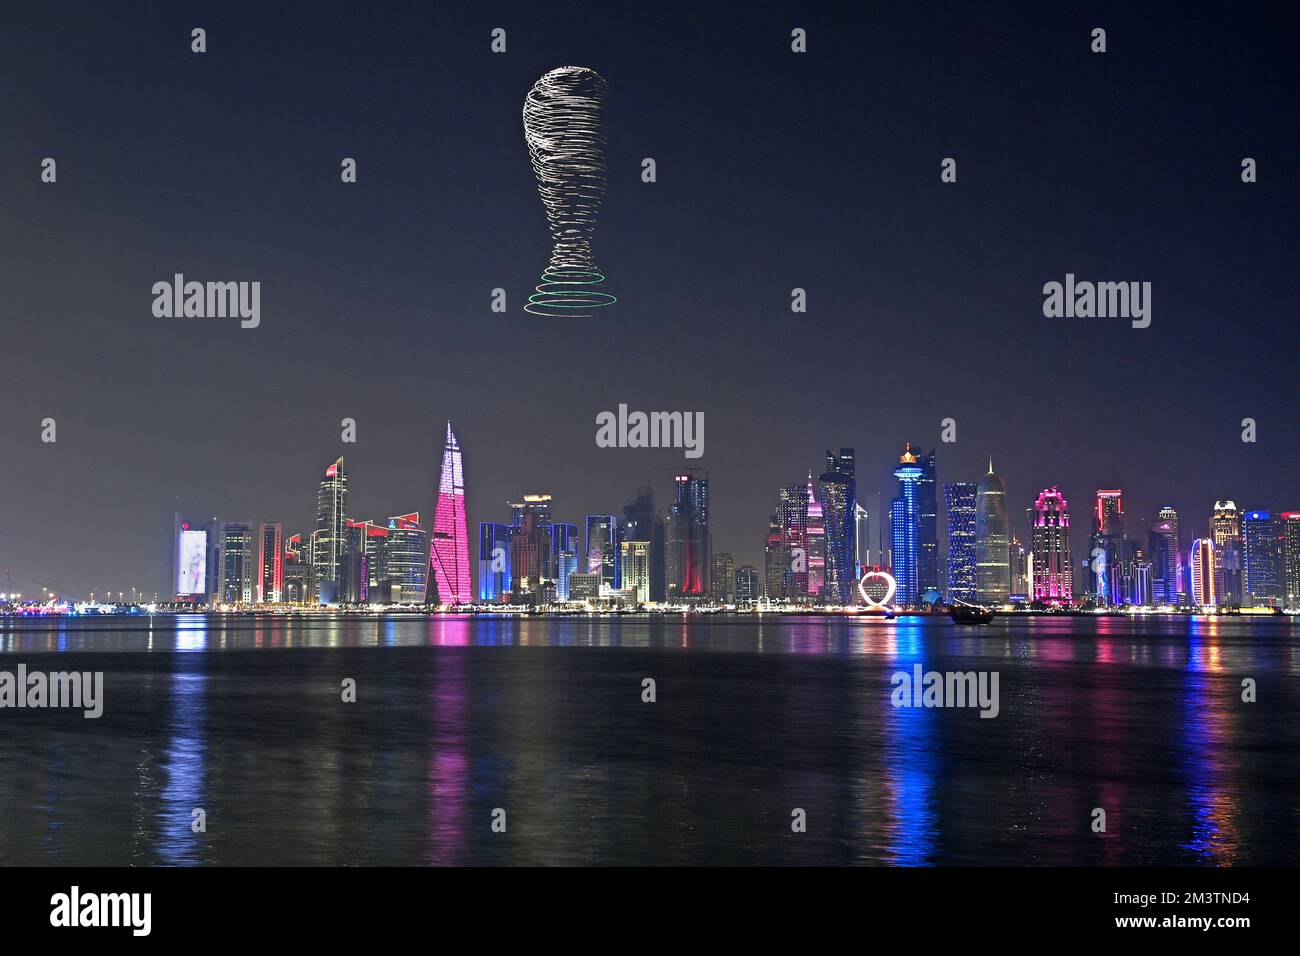 Eindrücke aus Doha/Katar am 16. Dezember 2022. Skyline, Wolkenkratzer, West Bay, Corniche. Drohnenshow, leichte Kunstwerke vom Fliegen und beleuchtete Drohnen am Himmel. Trophäe, Pokal. Fußball-Weltmeisterschaft 2022 in Katar ab 20,11. - 18.12.2022? Stockfoto